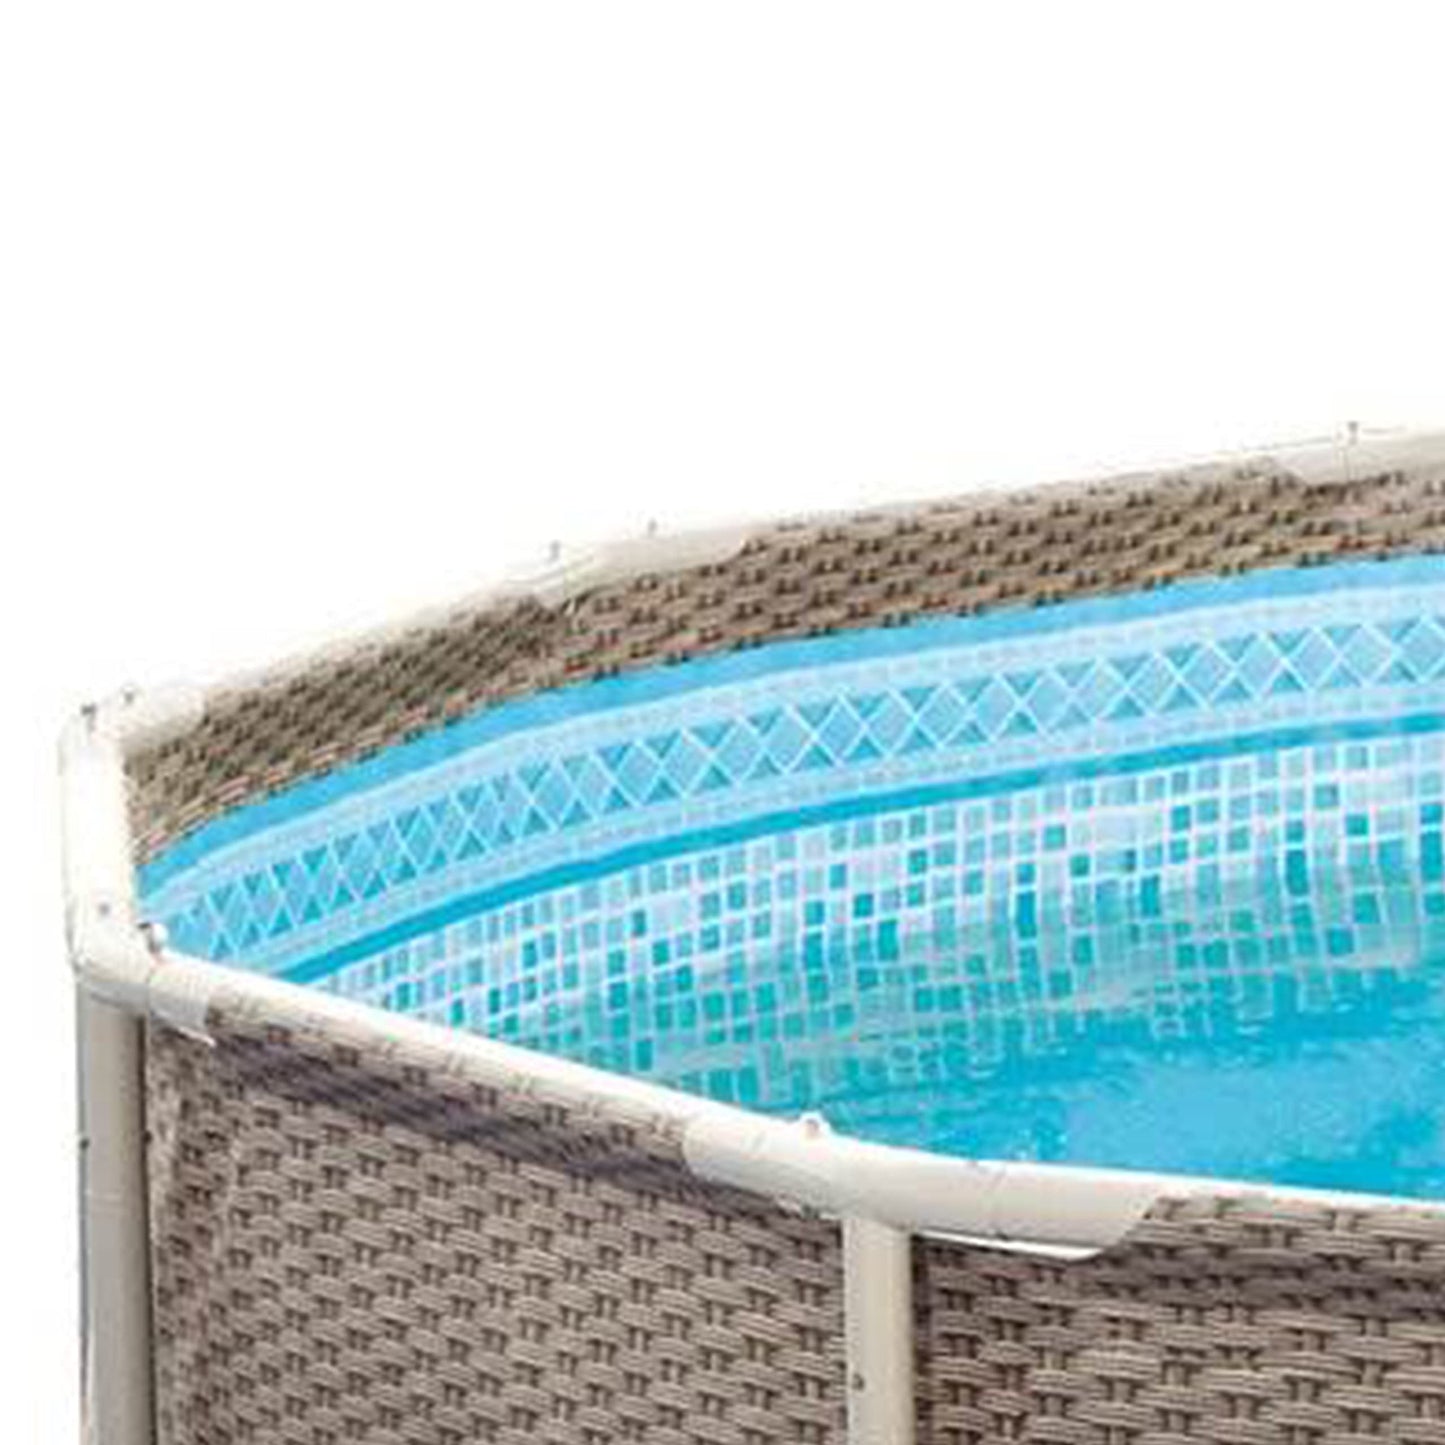 Summer Waves P20014482 Ensemble de piscine hors sol à cadre rond extérieur 14 pi x 48 po avec pompe de filtre skimmer, cartouche filtrante et échelle, osier clair marron/sable